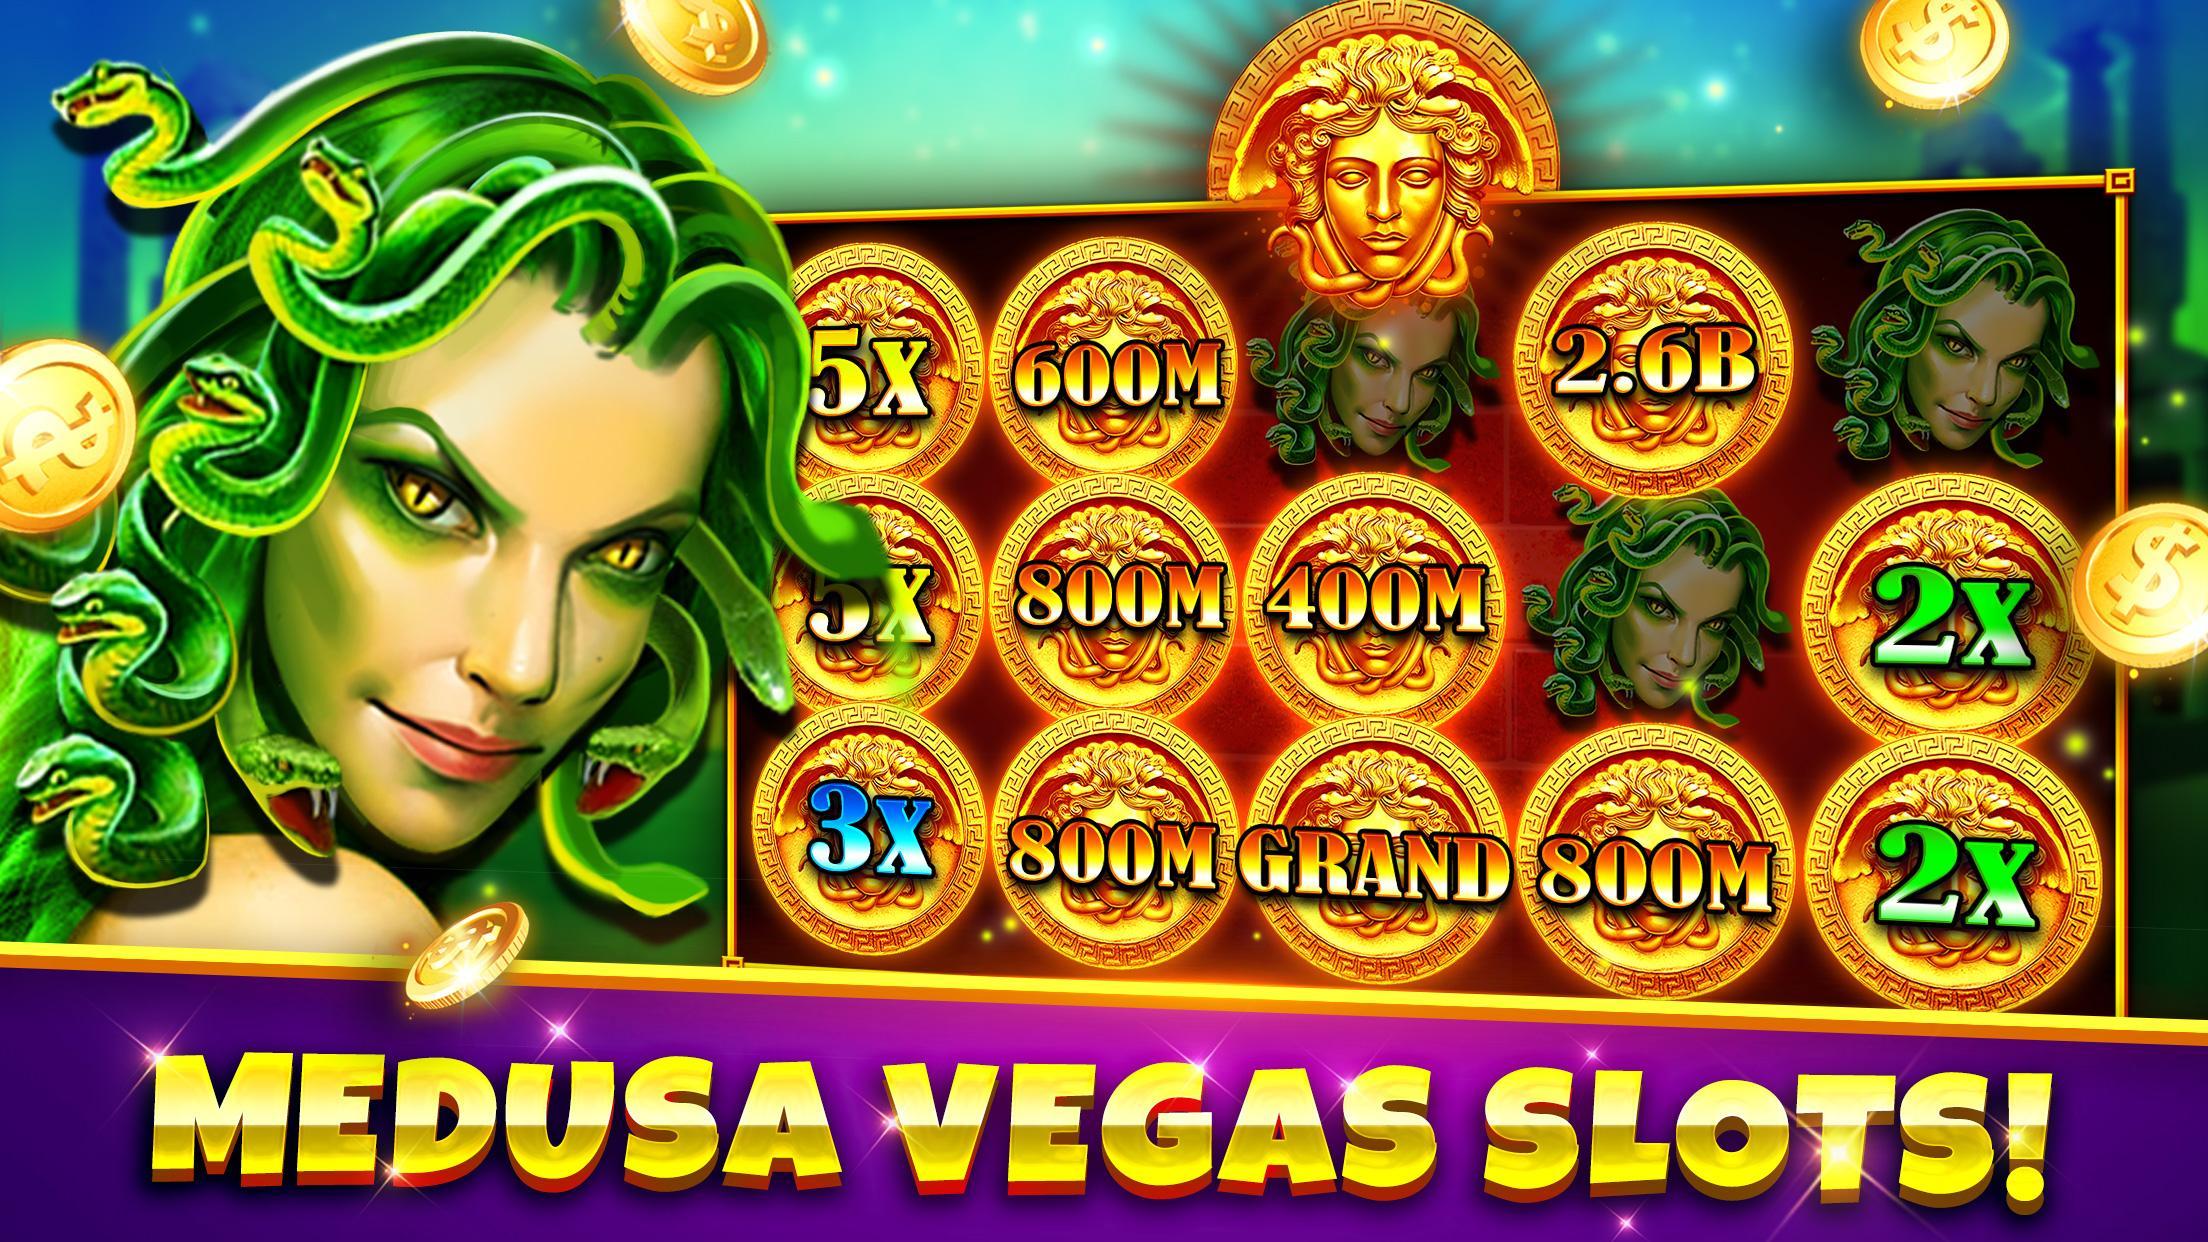 free casino slot machine games to play